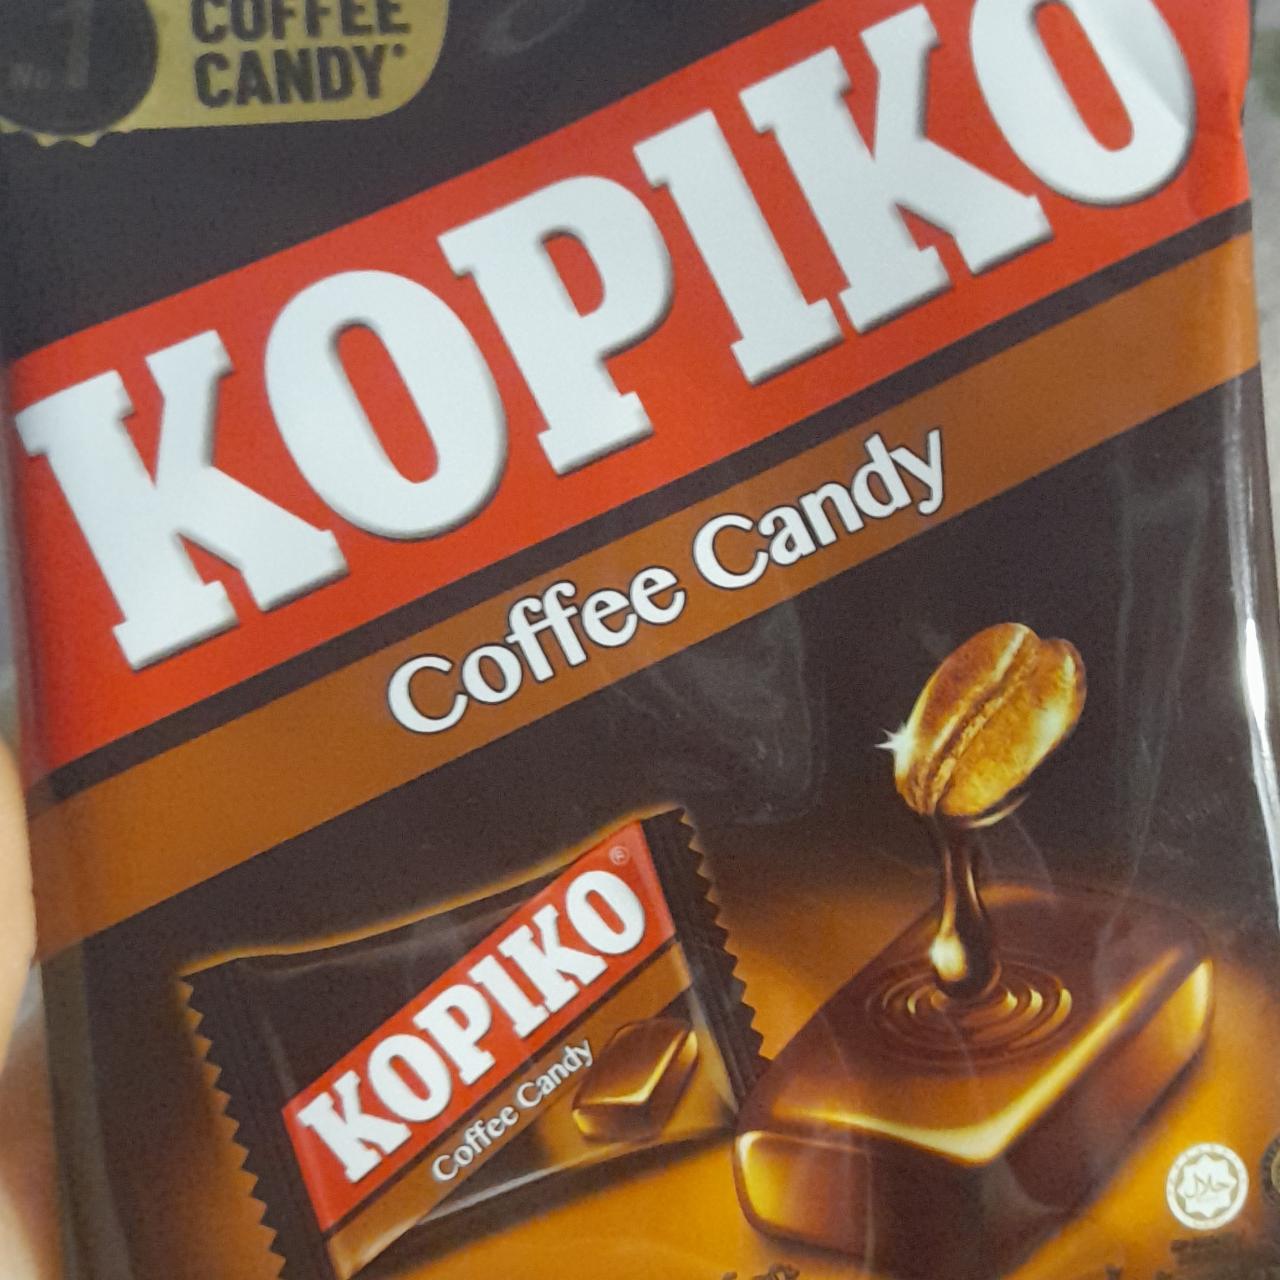 Фото - Кофейные конфеты Coffee candy Kopiko